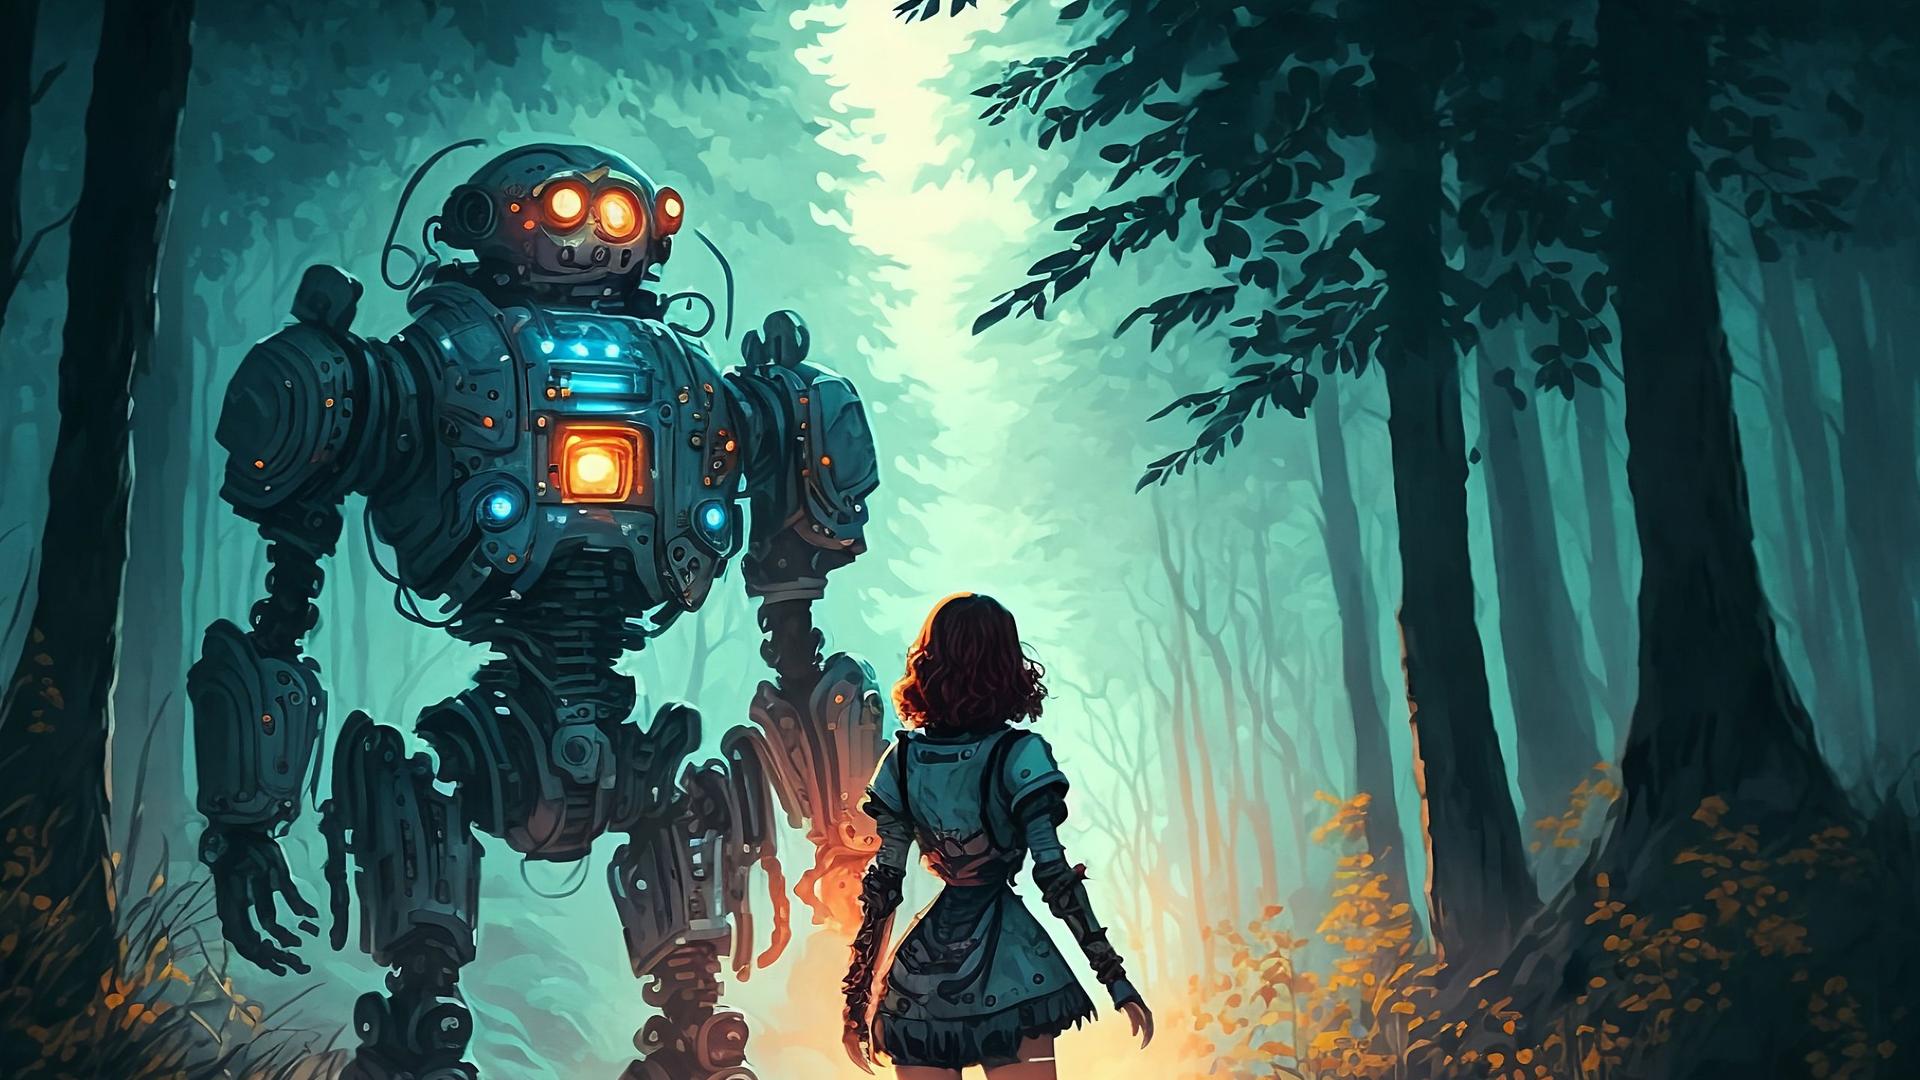 Ein von einer künstlichen Intelligenz generiertes Bild eines Mädchens und eines Roboters im Wald.